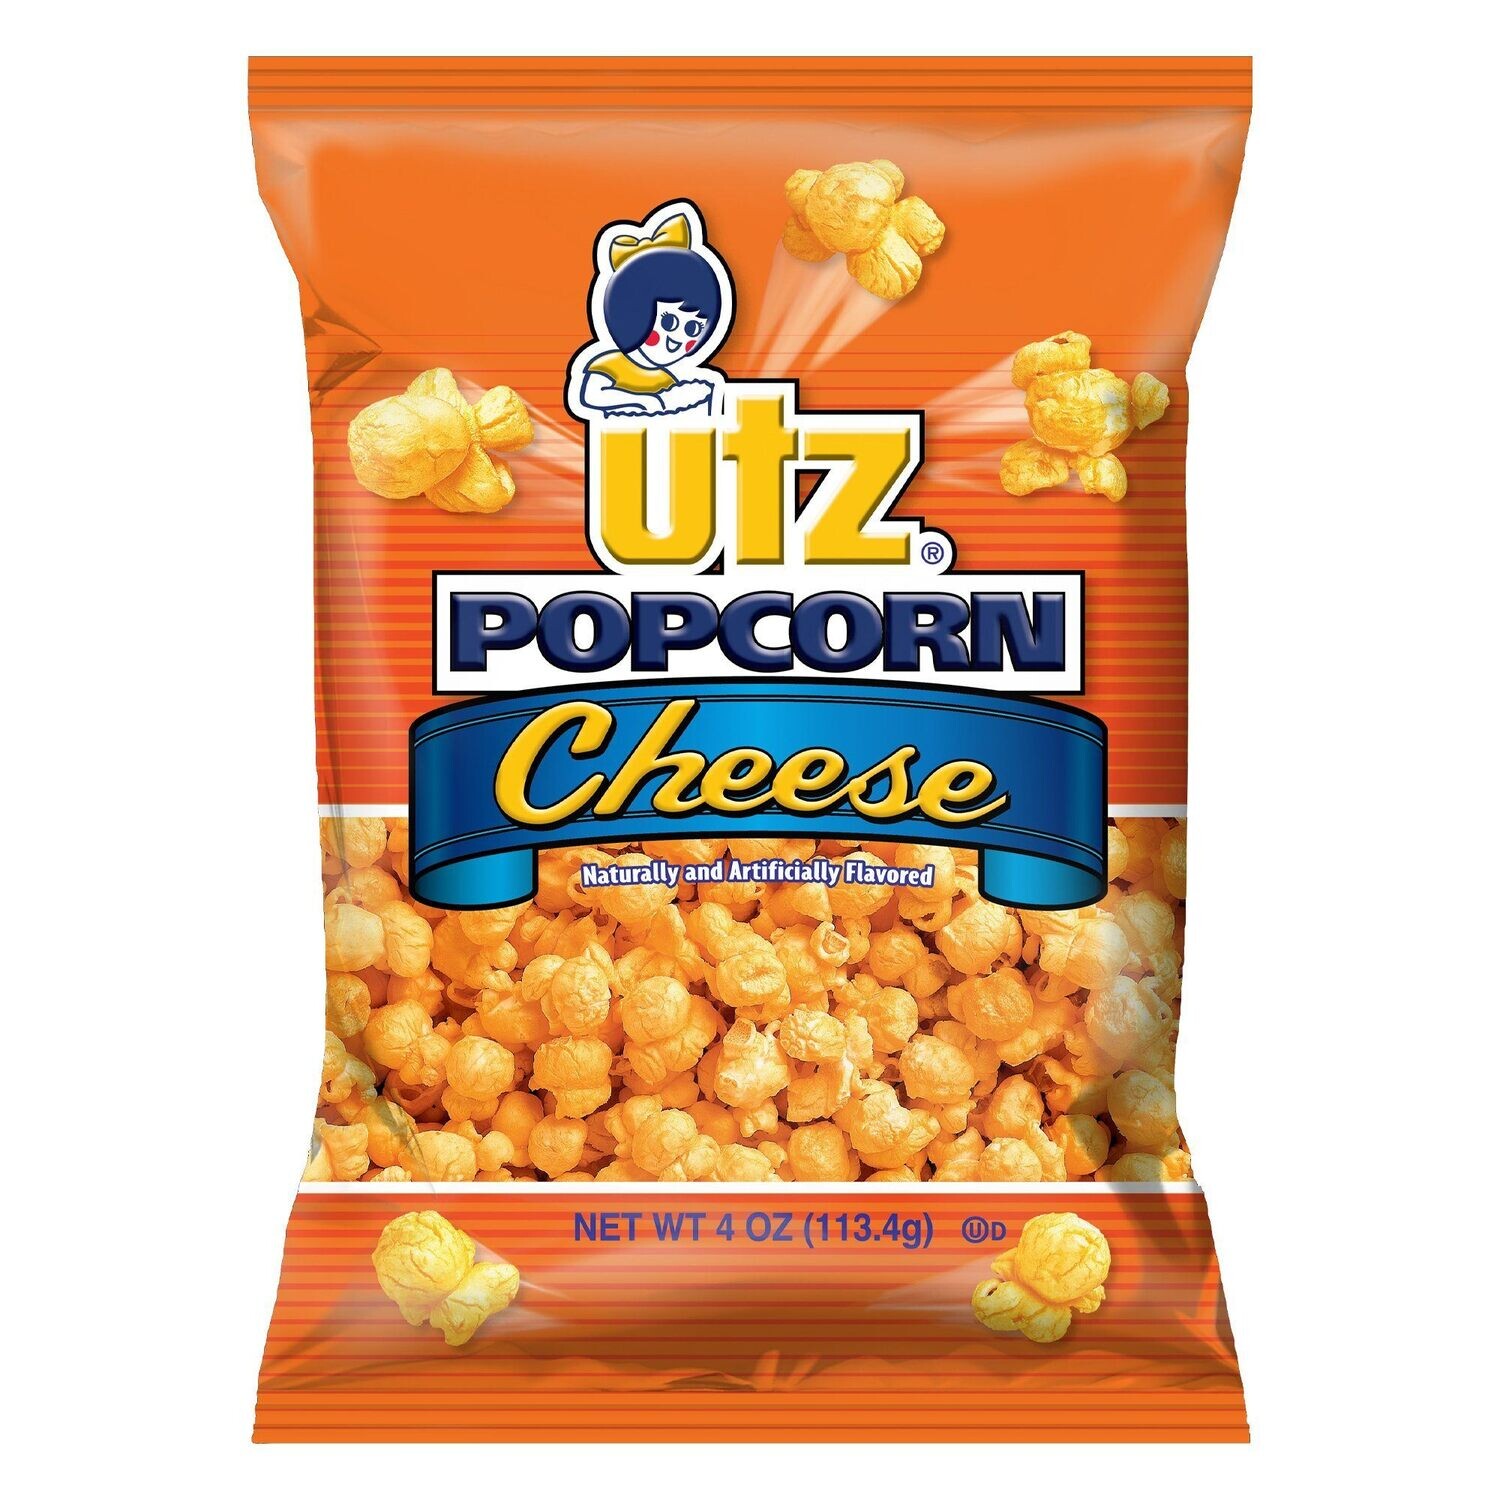 Utz Popcorn Cheese